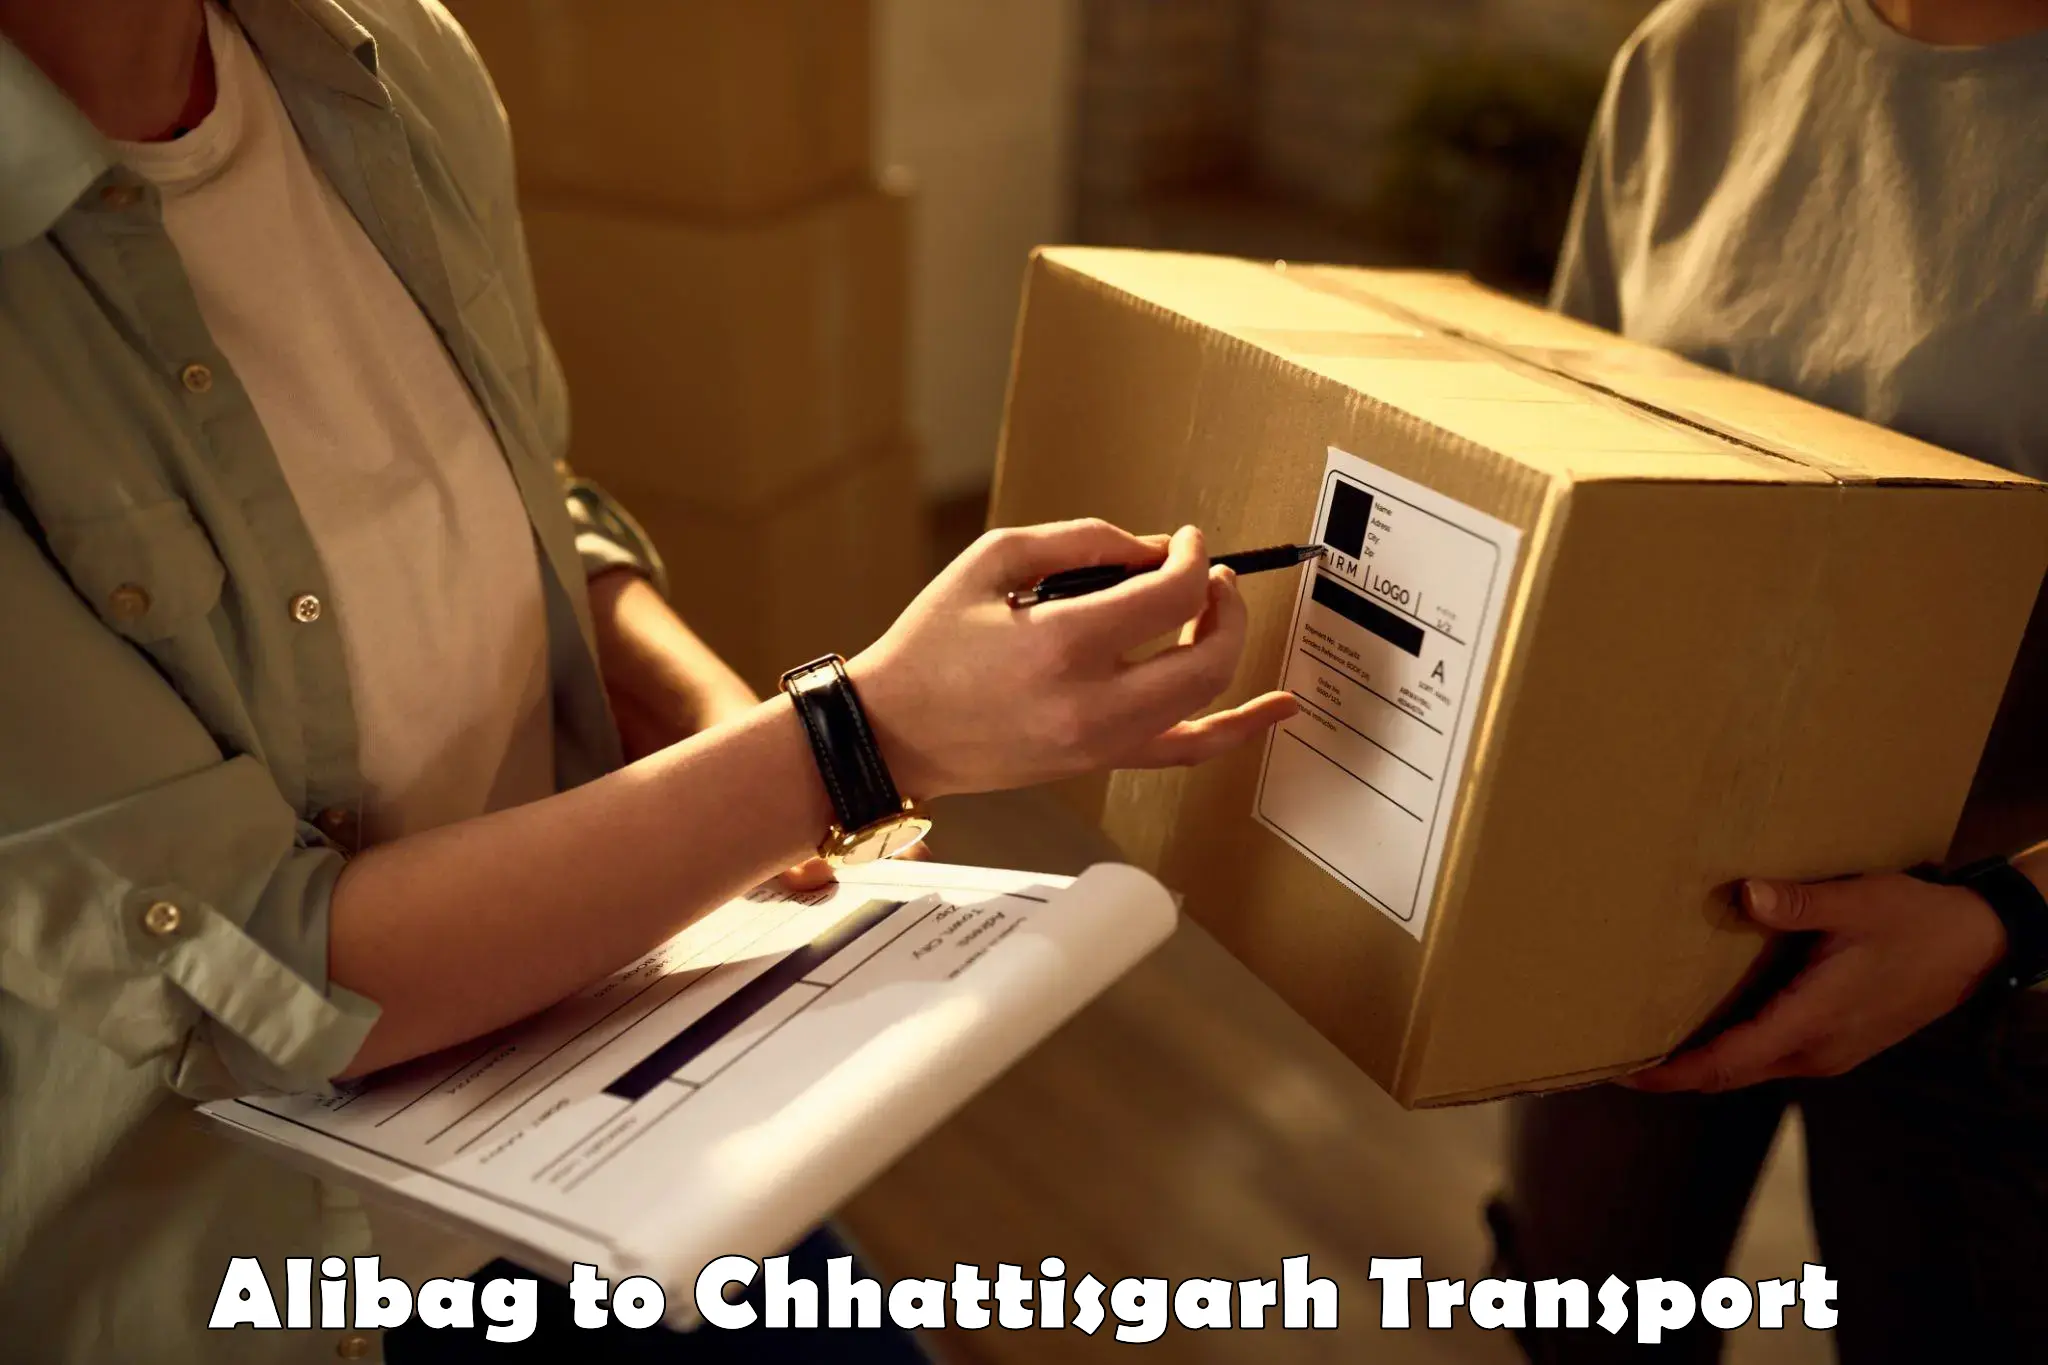 Domestic transport services Alibag to Raigarh Chhattisgarh